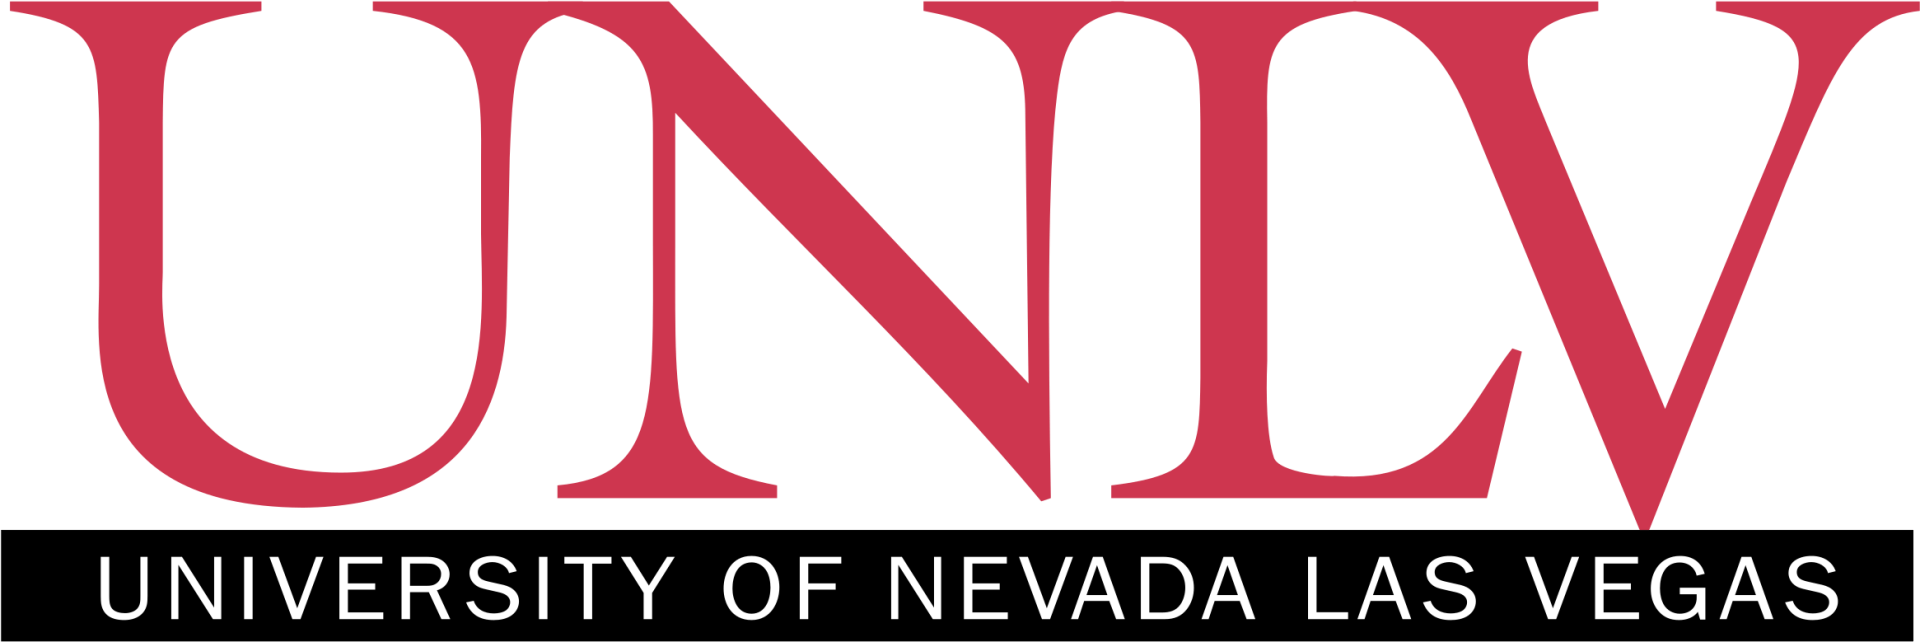 University of Nevada Las Vegas